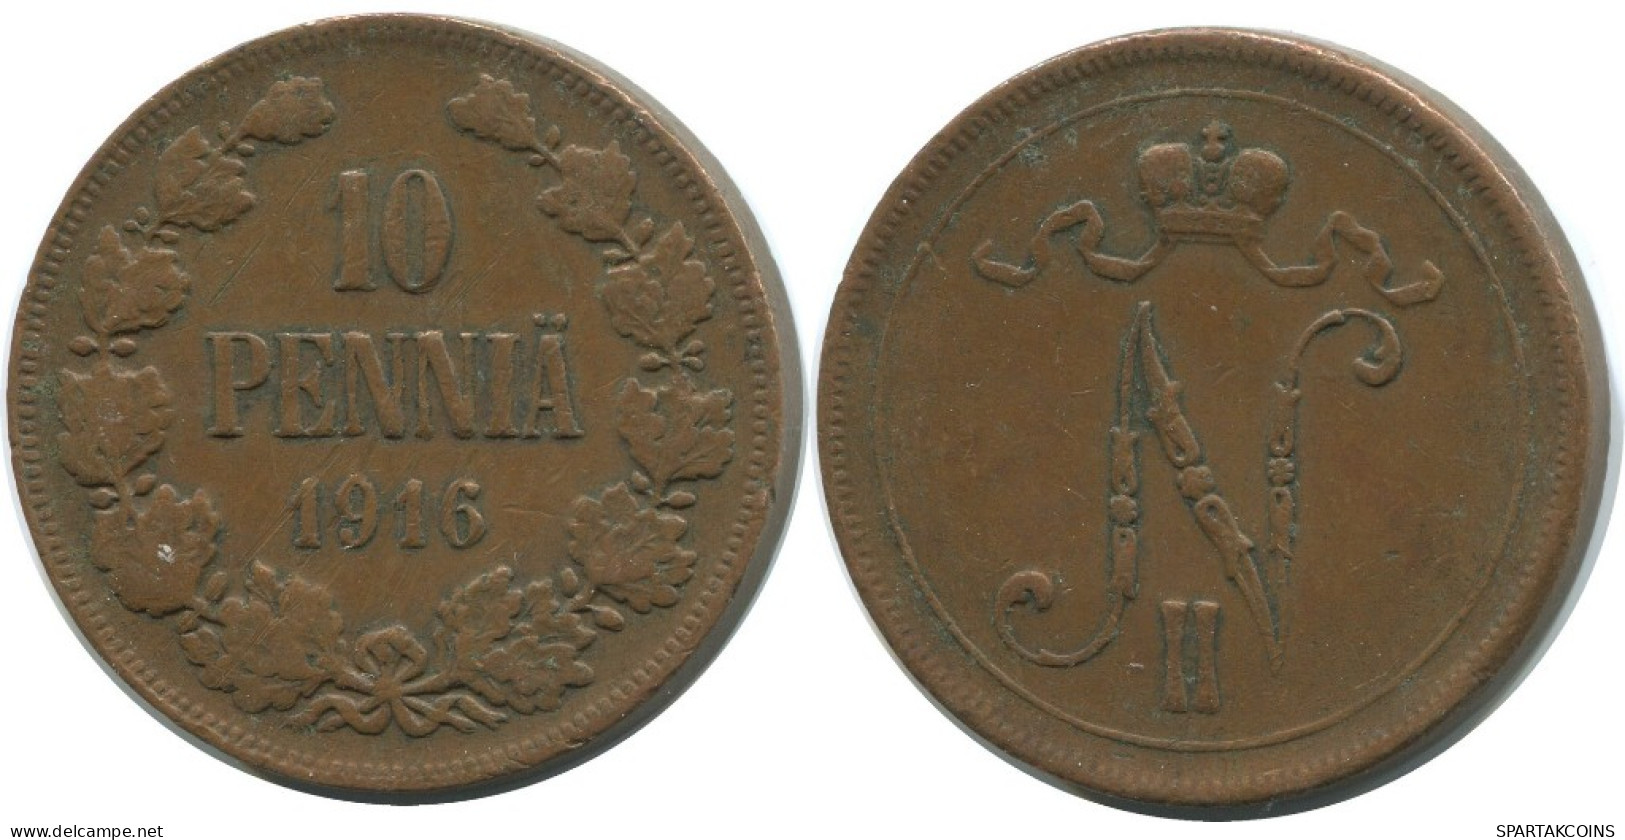 10 PENNIA 1916 FINLAND Coin RUSSIA EMPIRE #AB124.5.U.A - Finlande